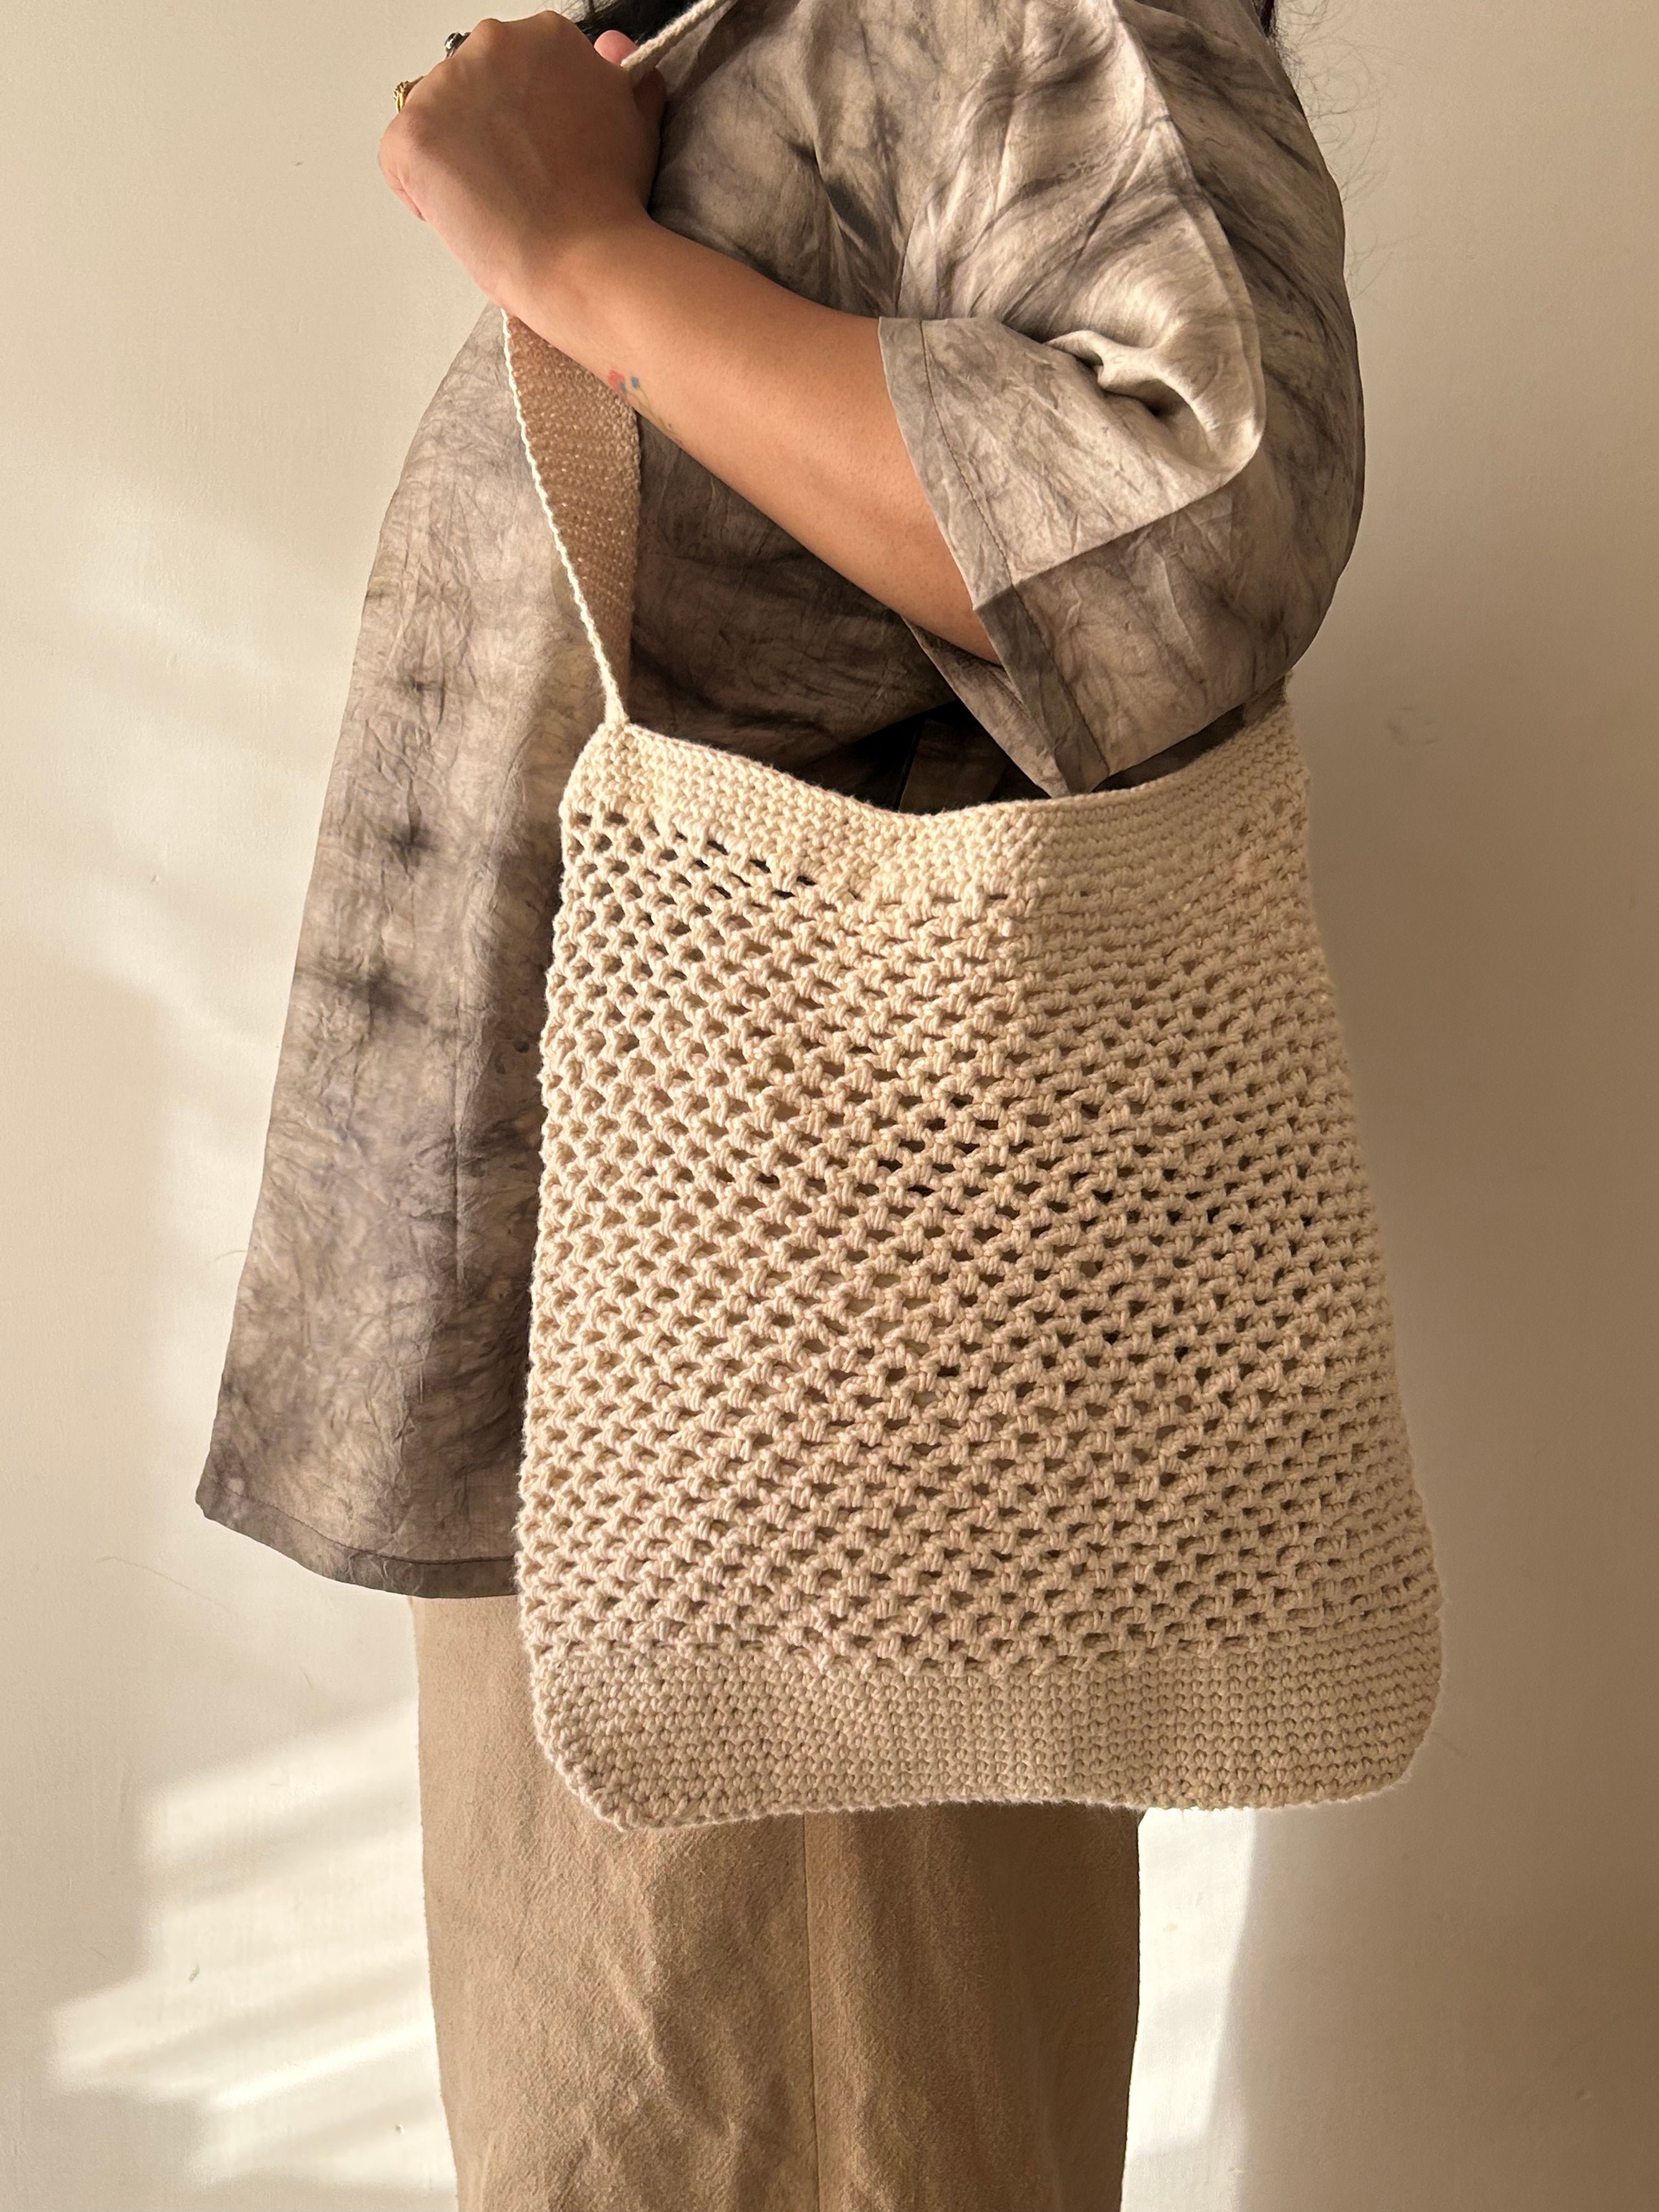 White Market Crochet Bag